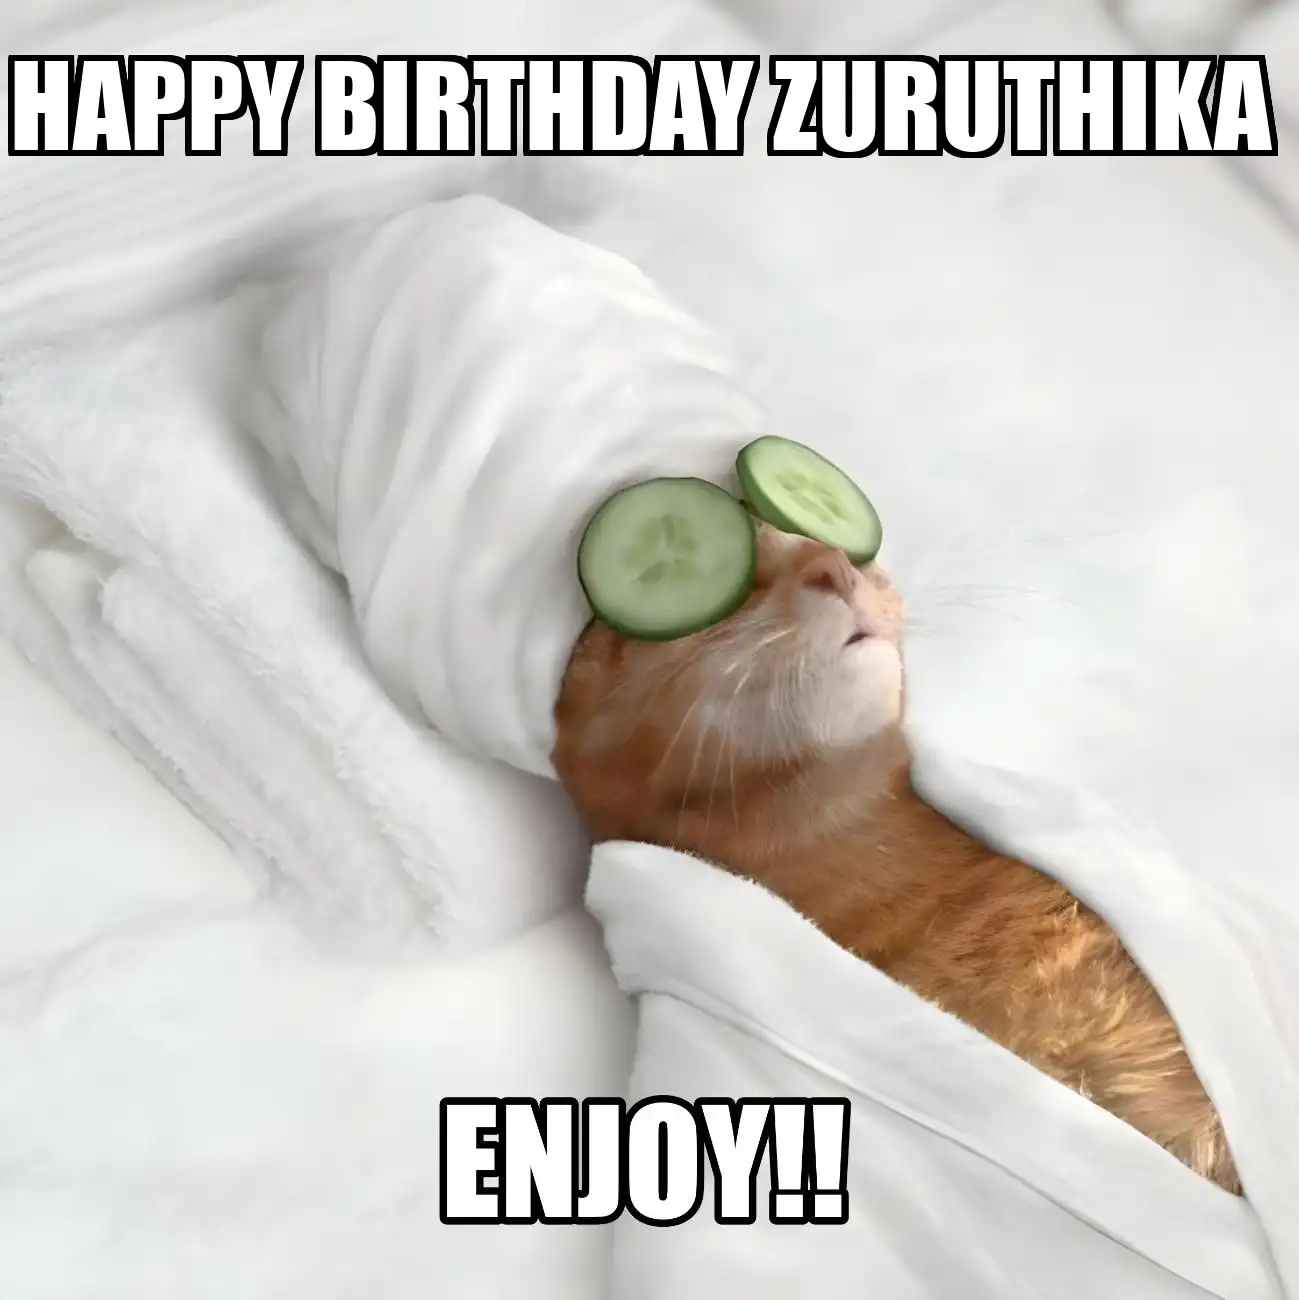 Happy Birthday Zuruthika Enjoy Cat Meme